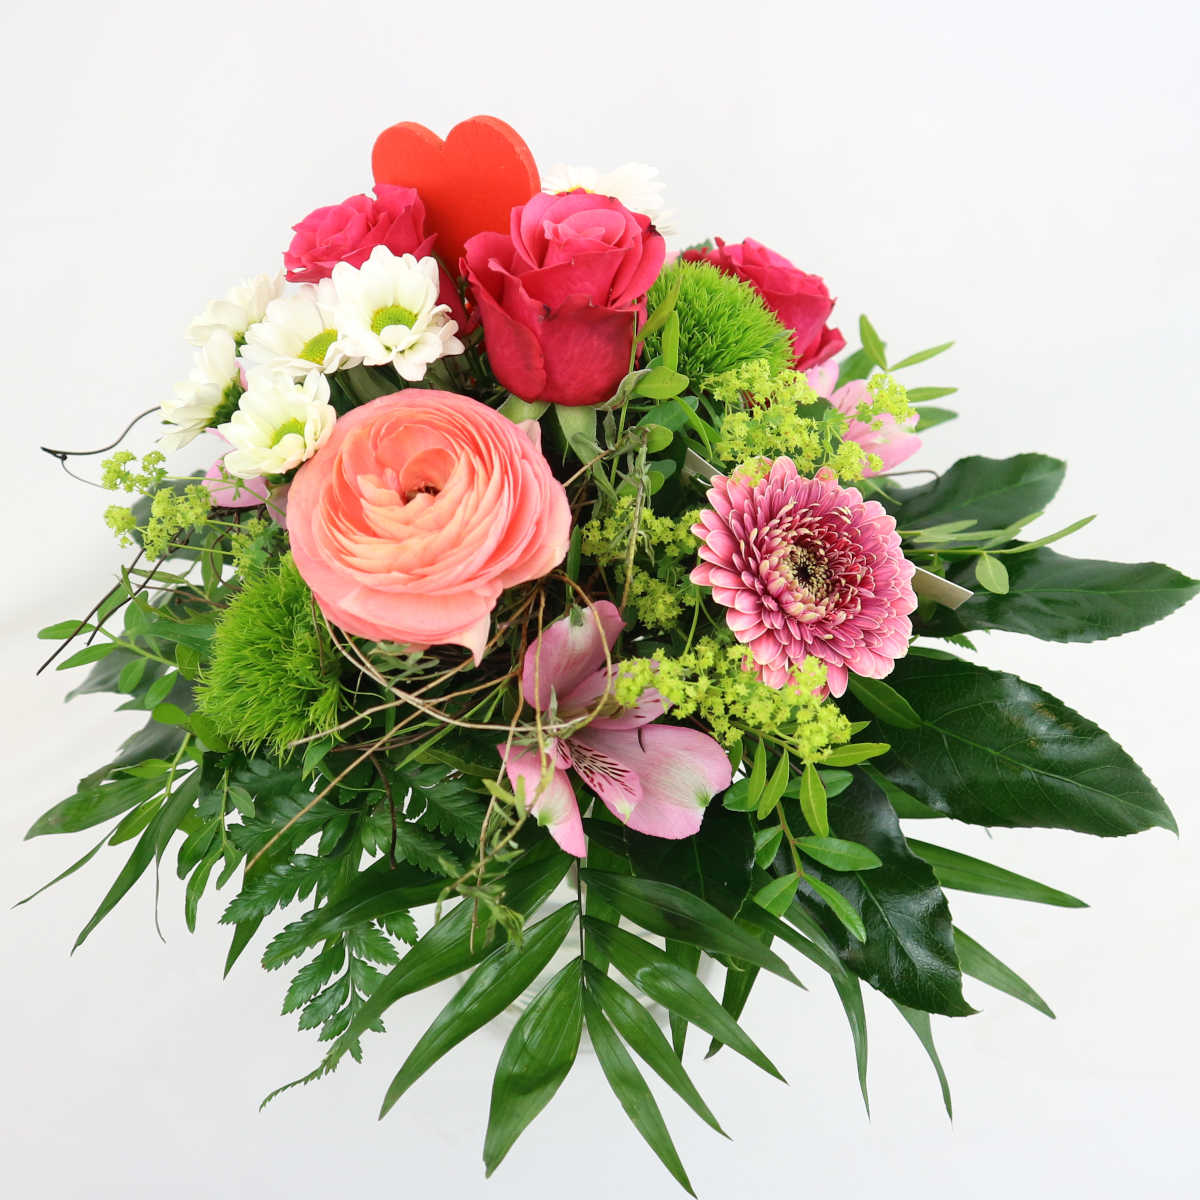 Ein sommerlicher Blumenstrauß zum Muttertag mit Rosen, Margariten, Gerbera, Inkalilie und Bonnys mit einem hözernen Herzstecker.